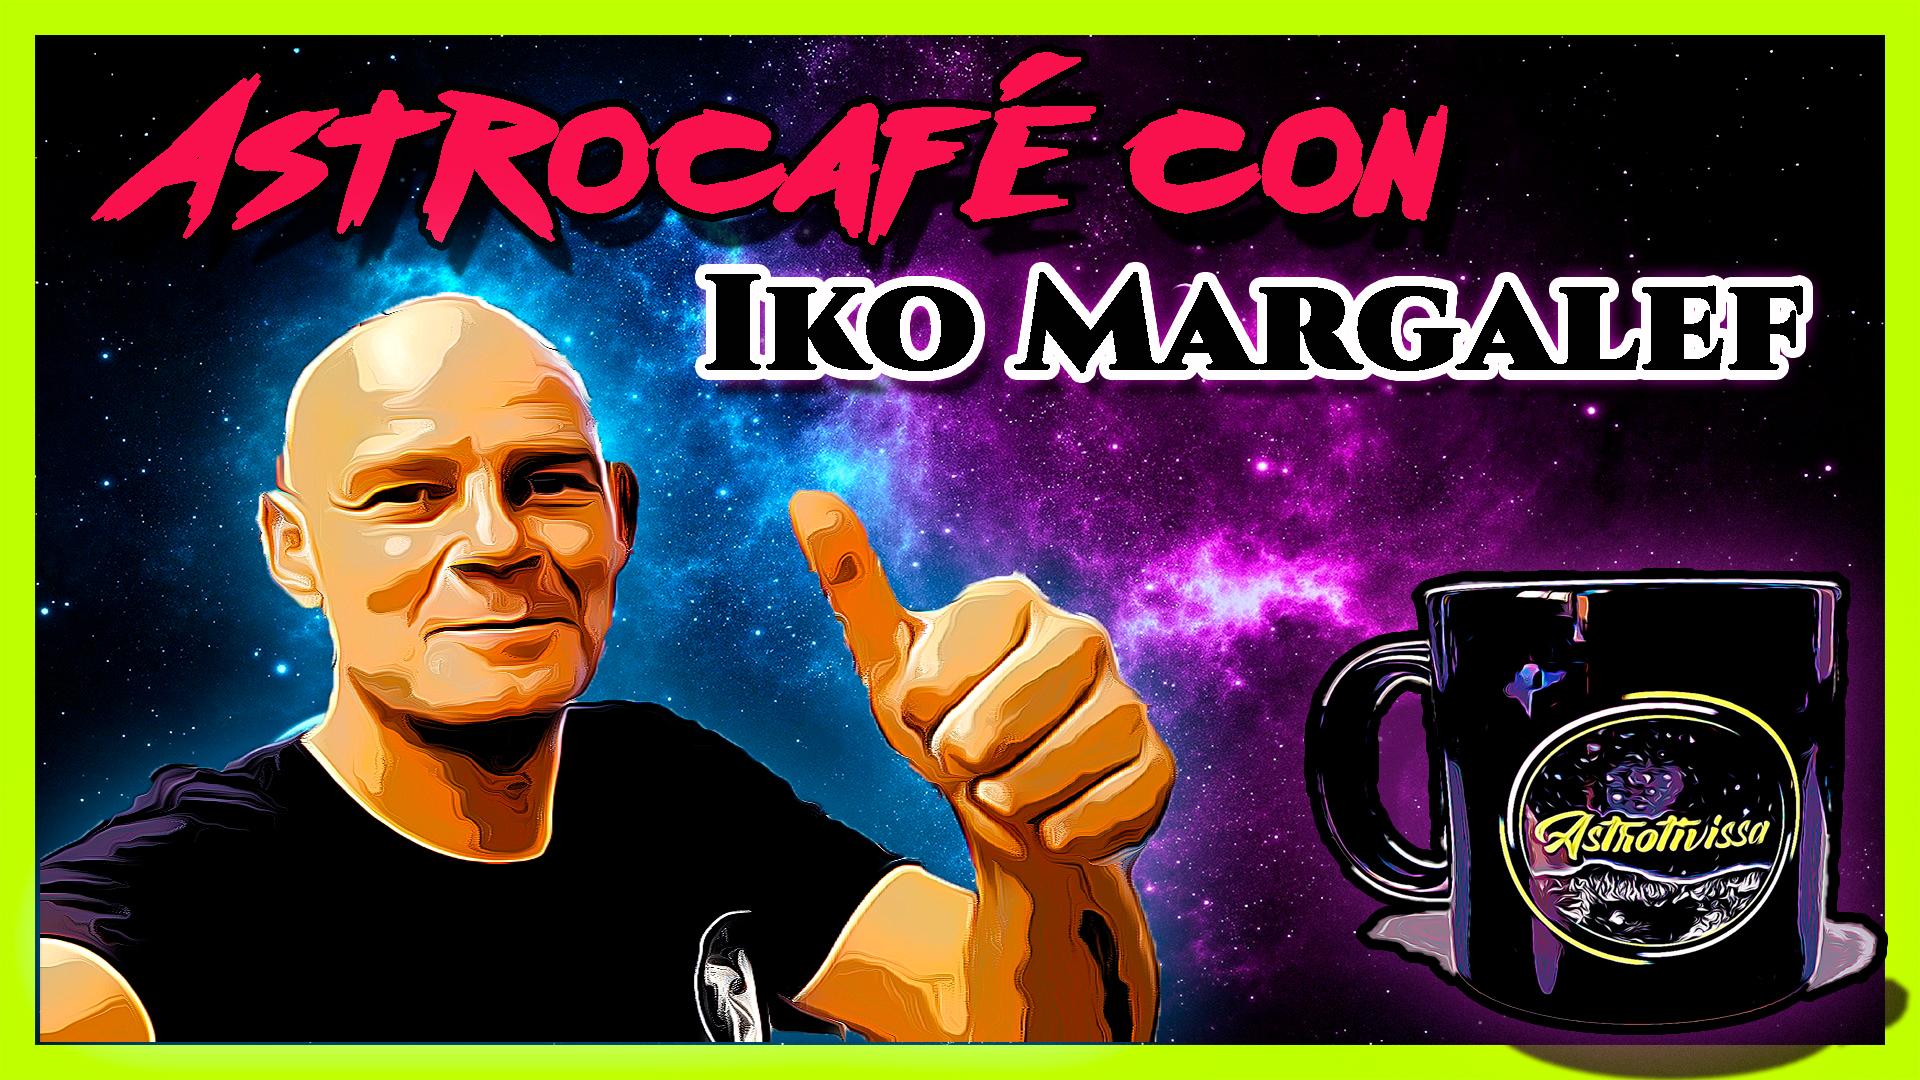 Astrocafé con IKO MARGALEF